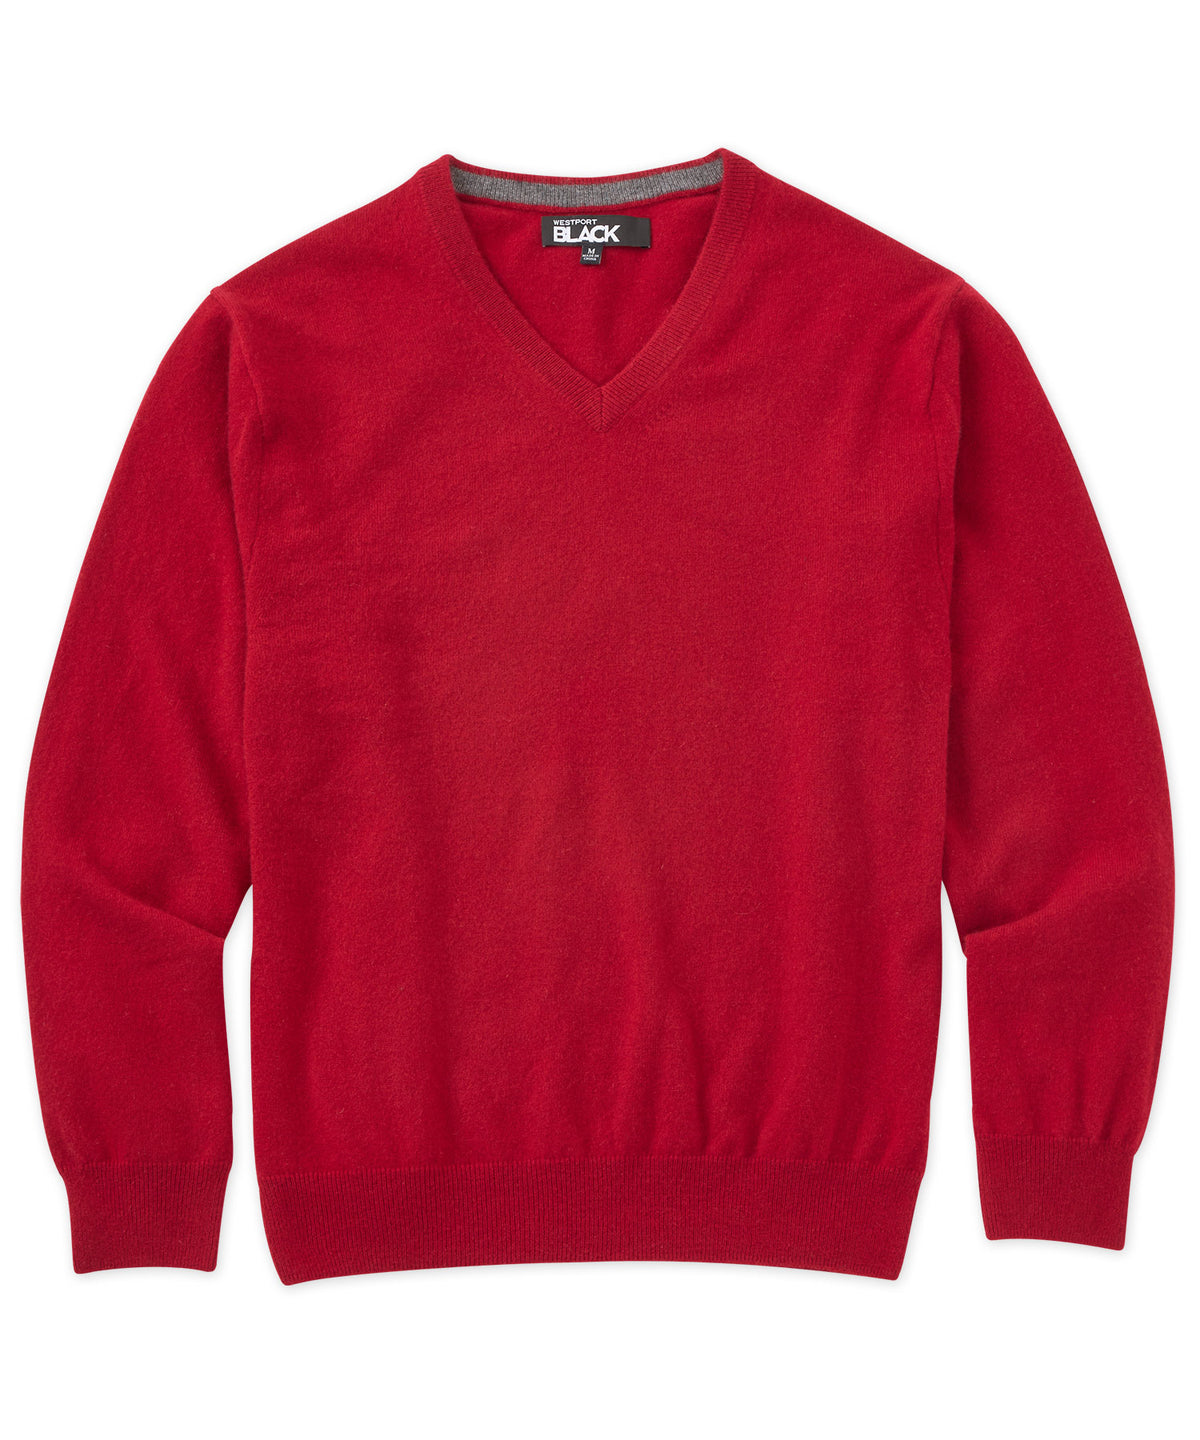 Westport Black Cashmere V-Neck Sweater, Men's Big & Tall